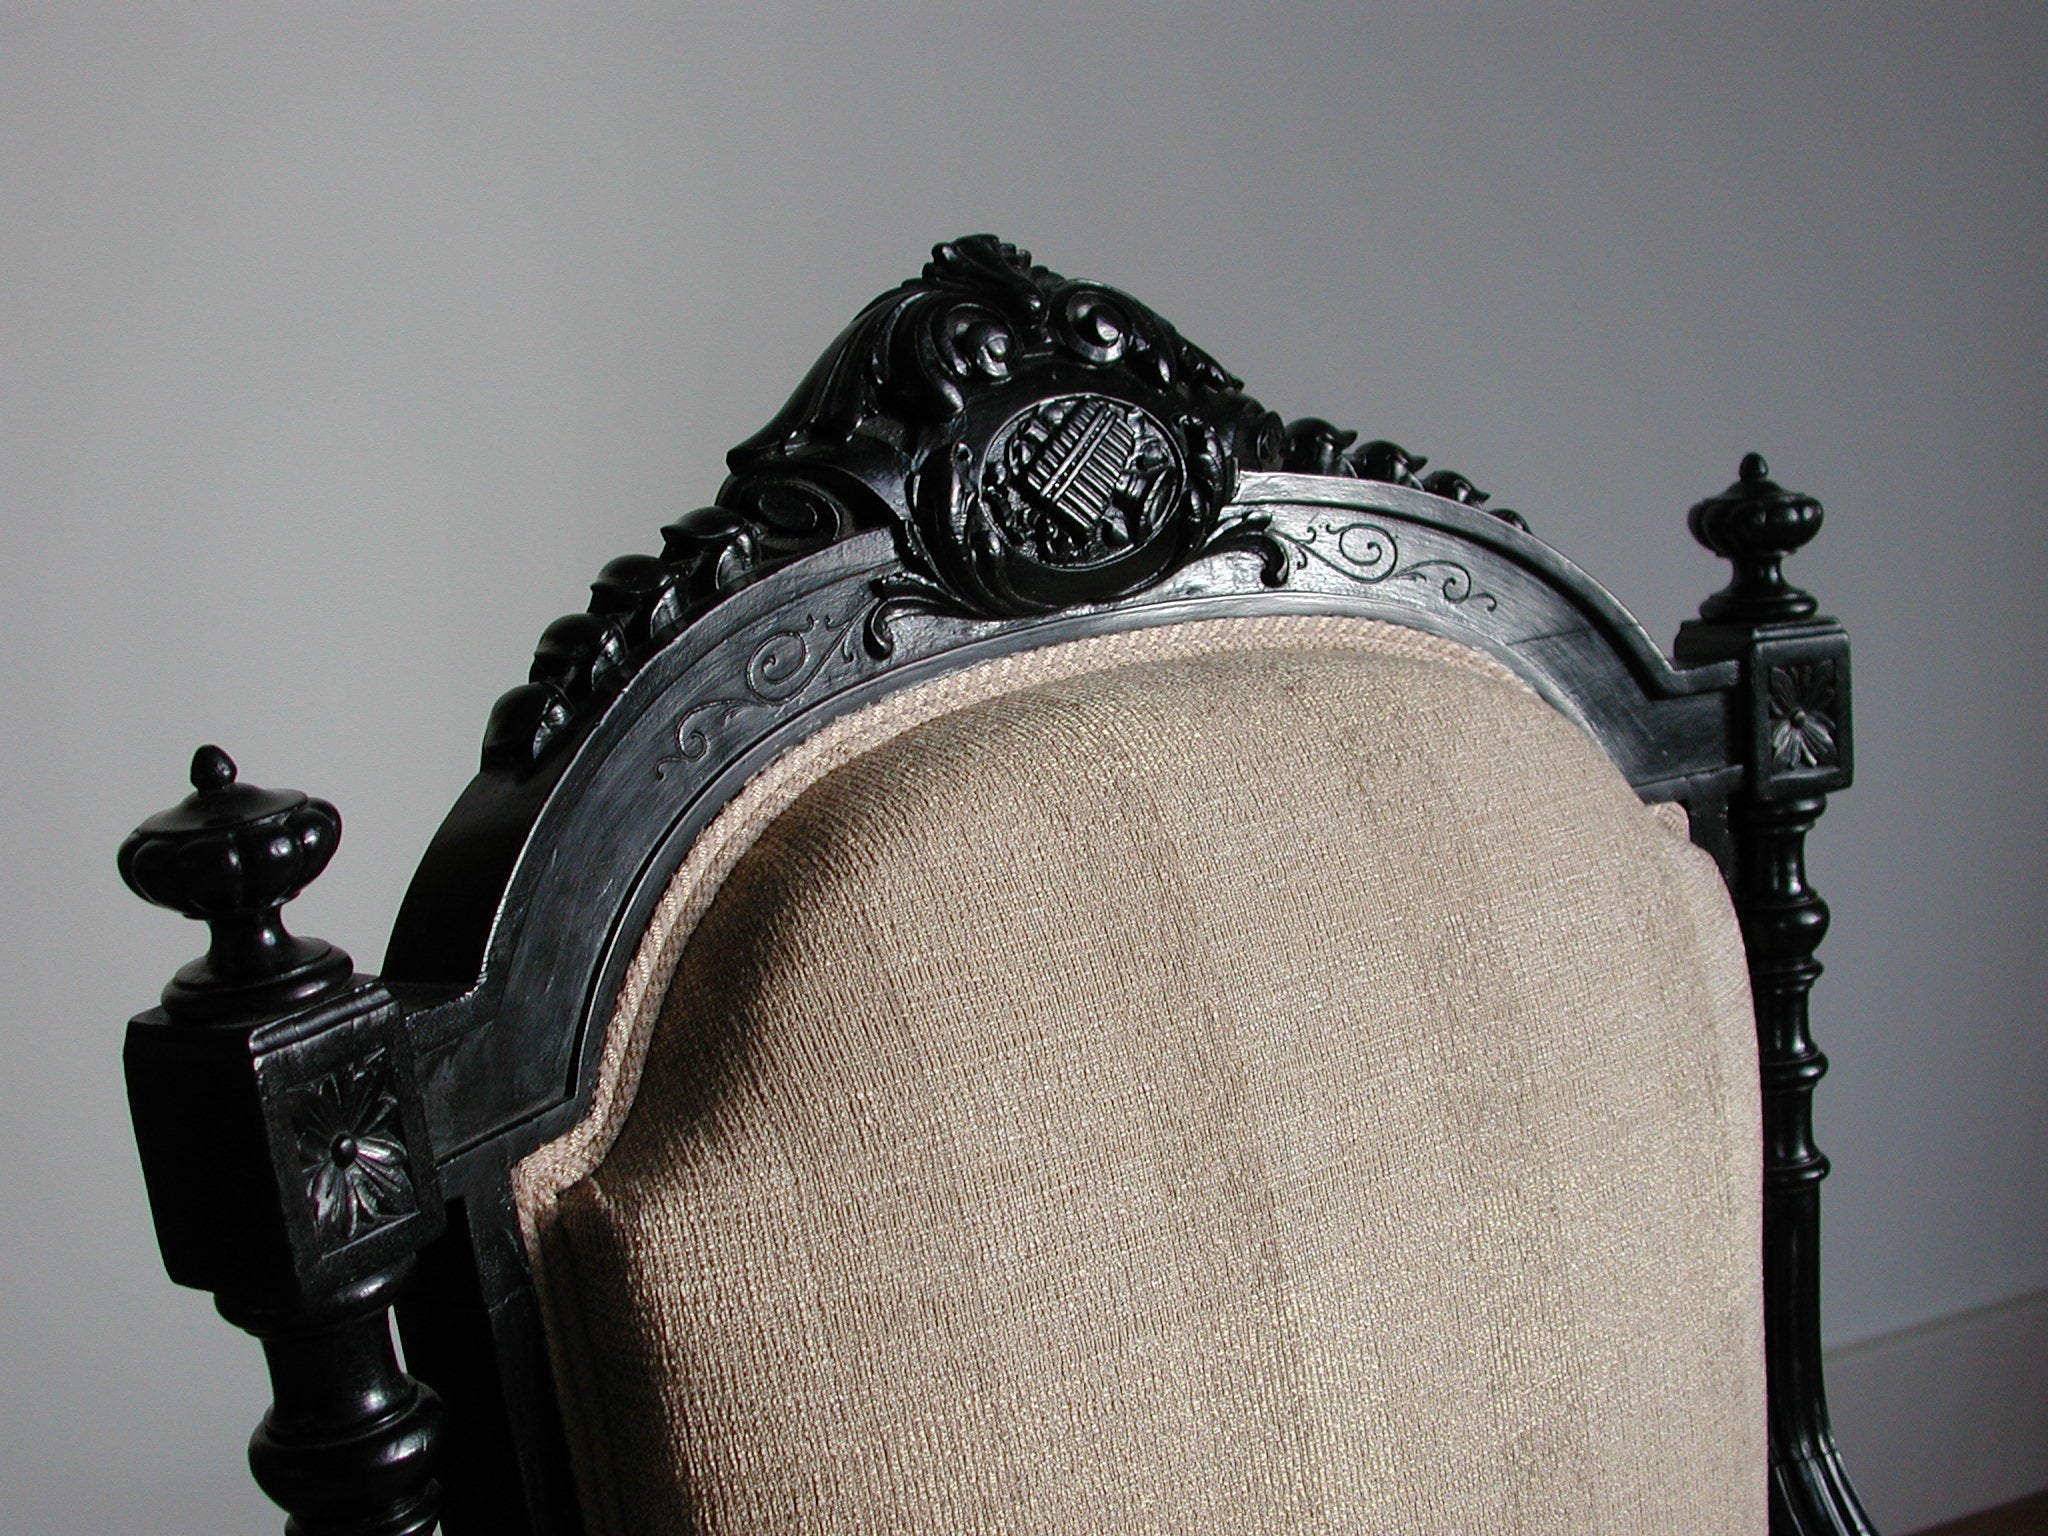 S&K meubelen-Twee zwartgepolitoerde armfauteuils style Louis XVI ca. 1880-1890 (set) - Schreuder-kraan.shop